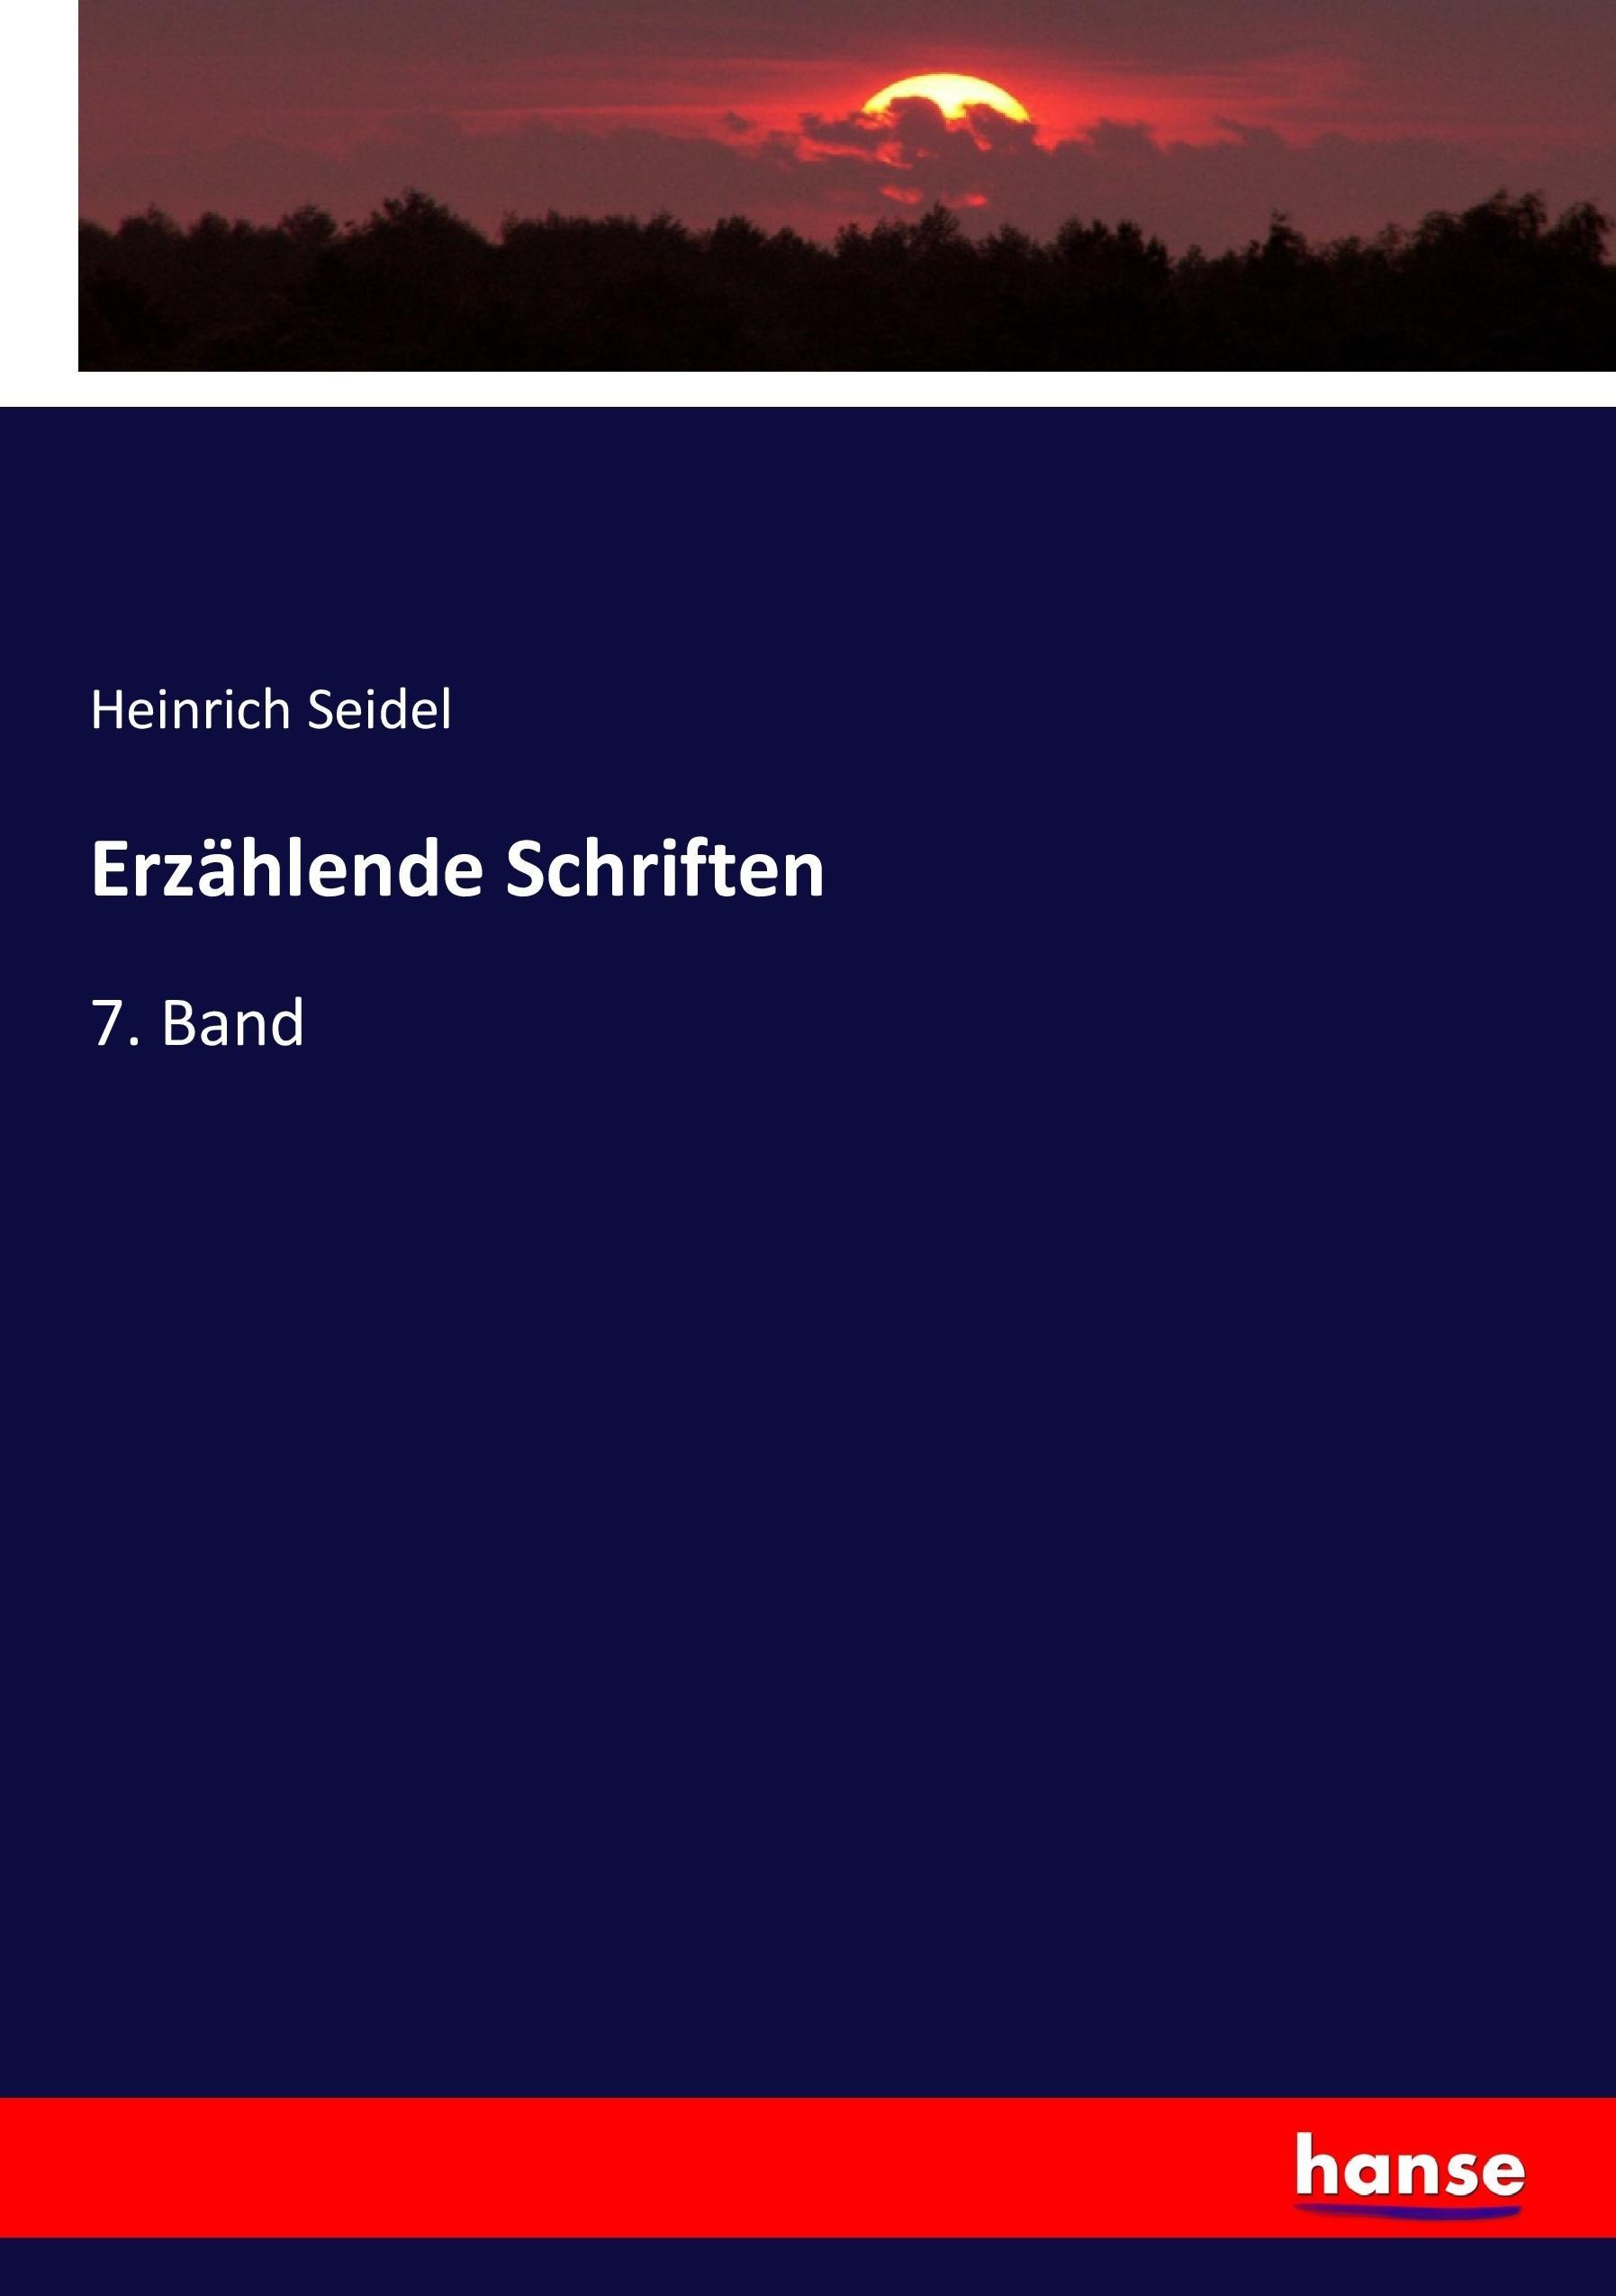 Erzählende Schriften | 7. Band | Heinrich Seidel | Taschenbuch | Paperback | 344 S. | Deutsch | 2017 | hansebooks | EAN 9783744616478 - Seidel, Heinrich